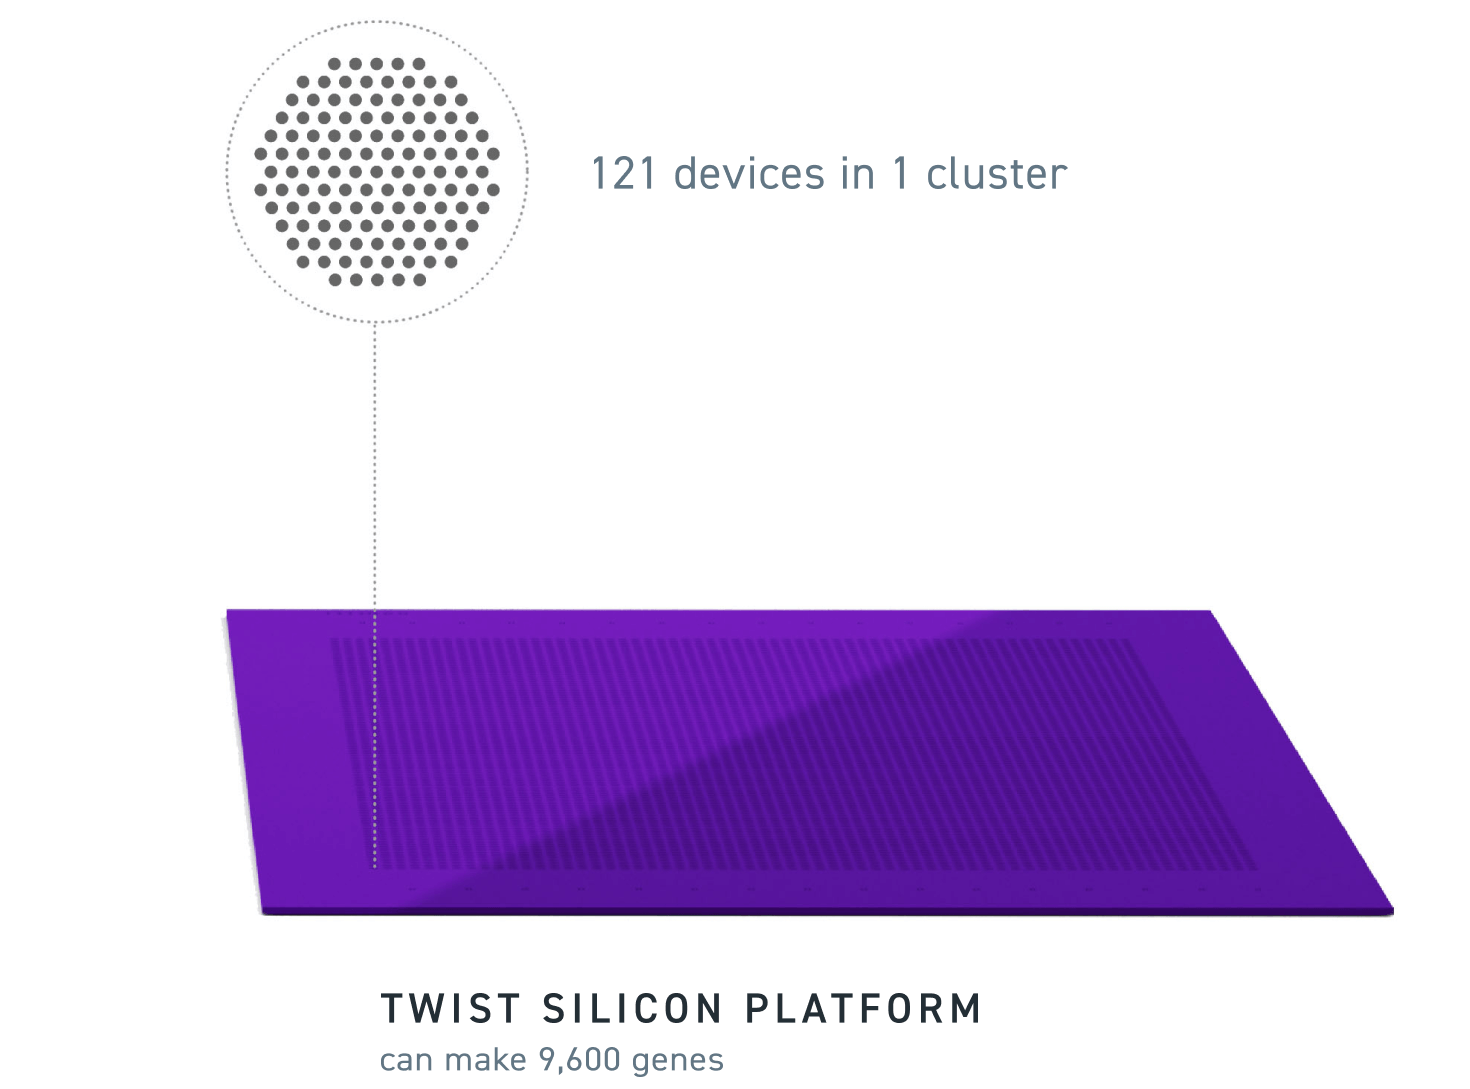 plataforma de silicio twist